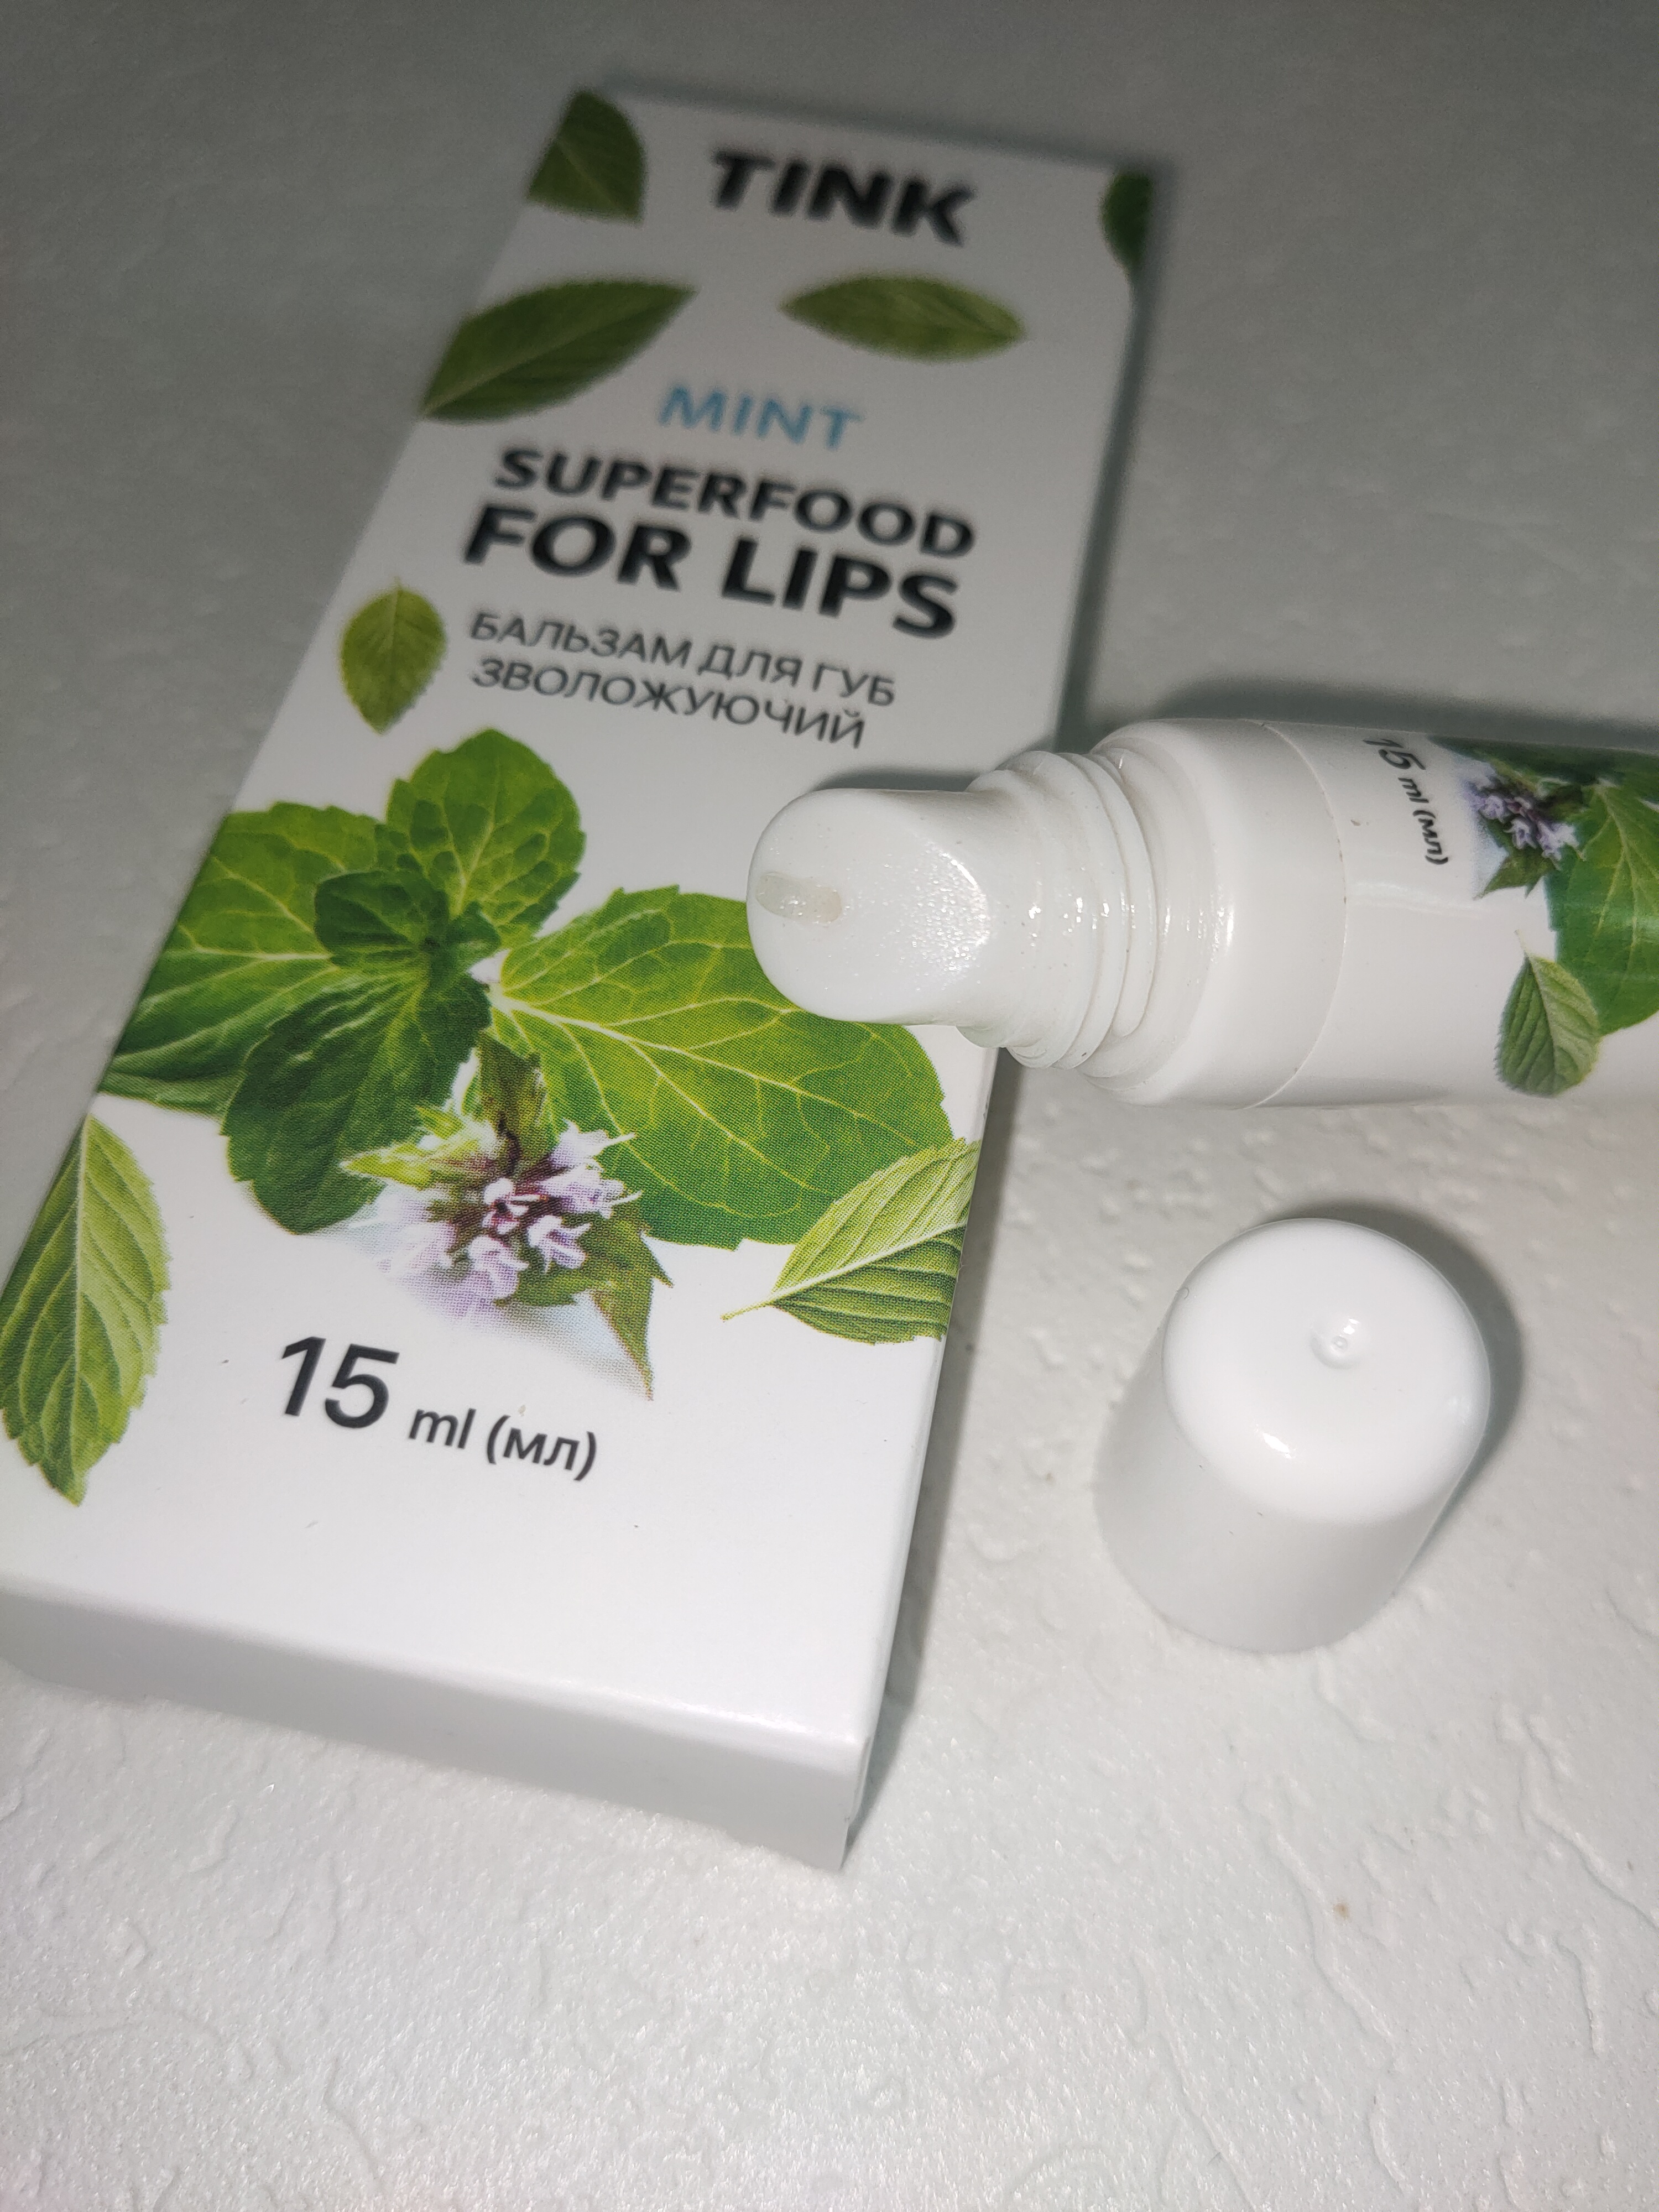 Охолоджувальний бальзам для губ "М'ята" Tink Superfood For Lips Mint